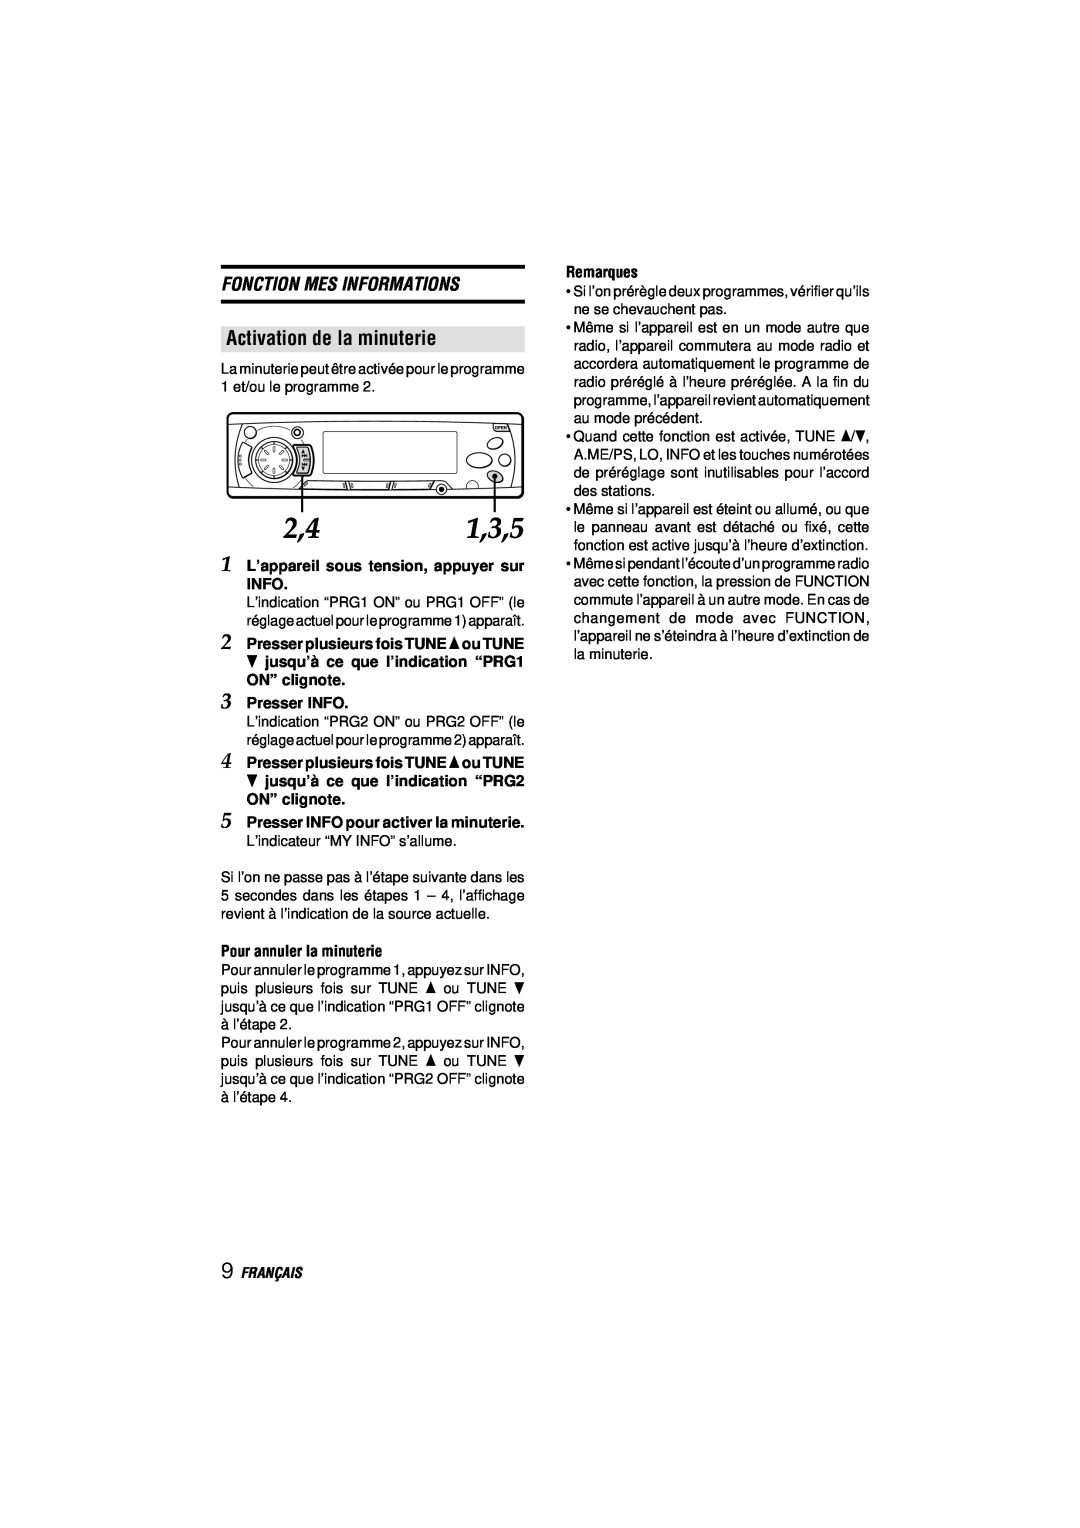 Aiwa CDC-MP3 manual Activation de la minuterie, Fonction Mes Informations, Français 